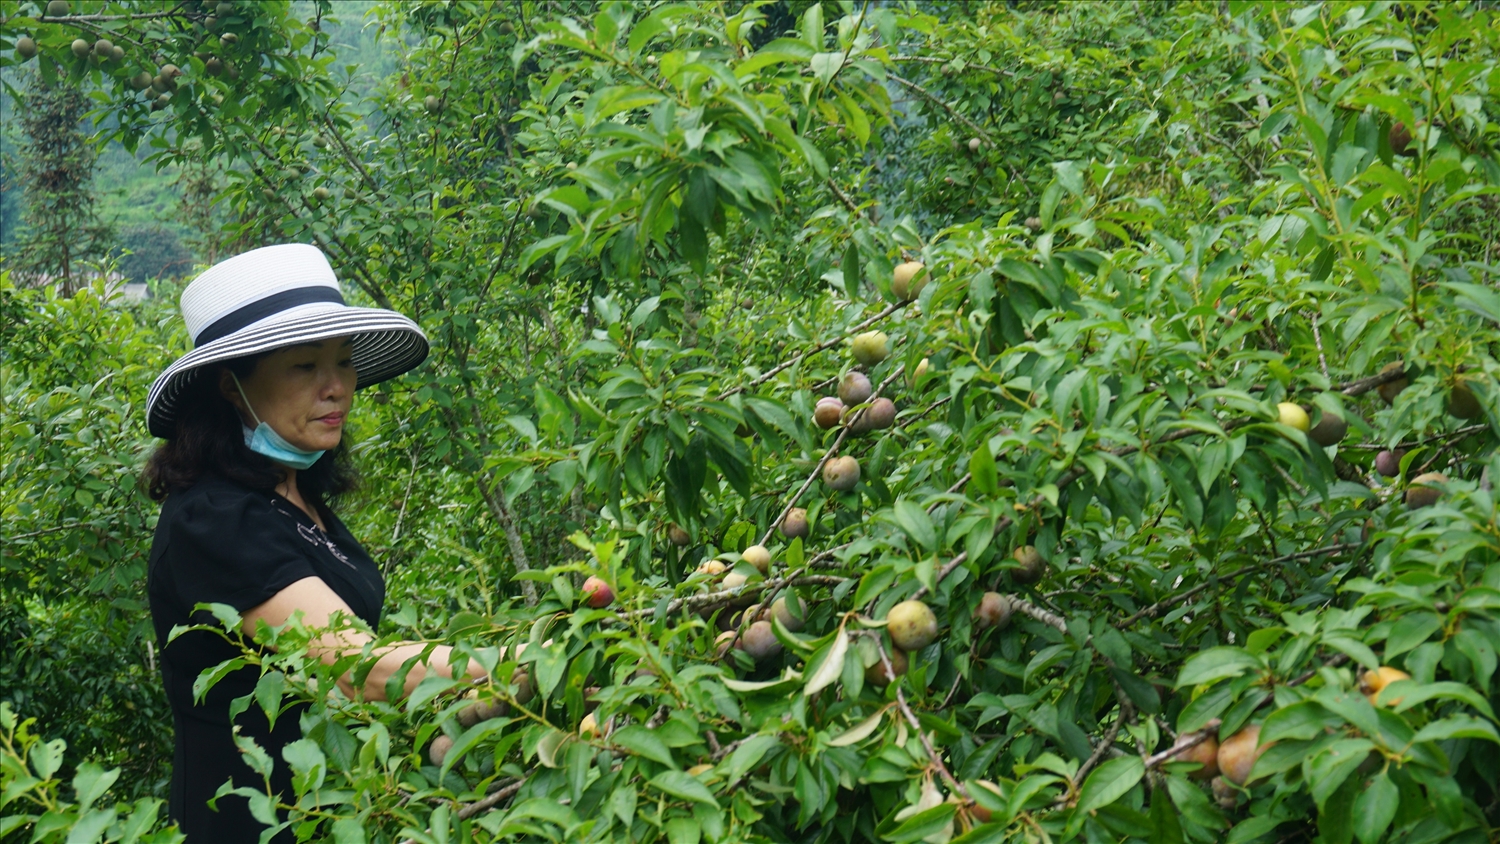 Mận Tam hoa là một trong những loại cây ăn quả đặc sản của huyện Bắc Hà